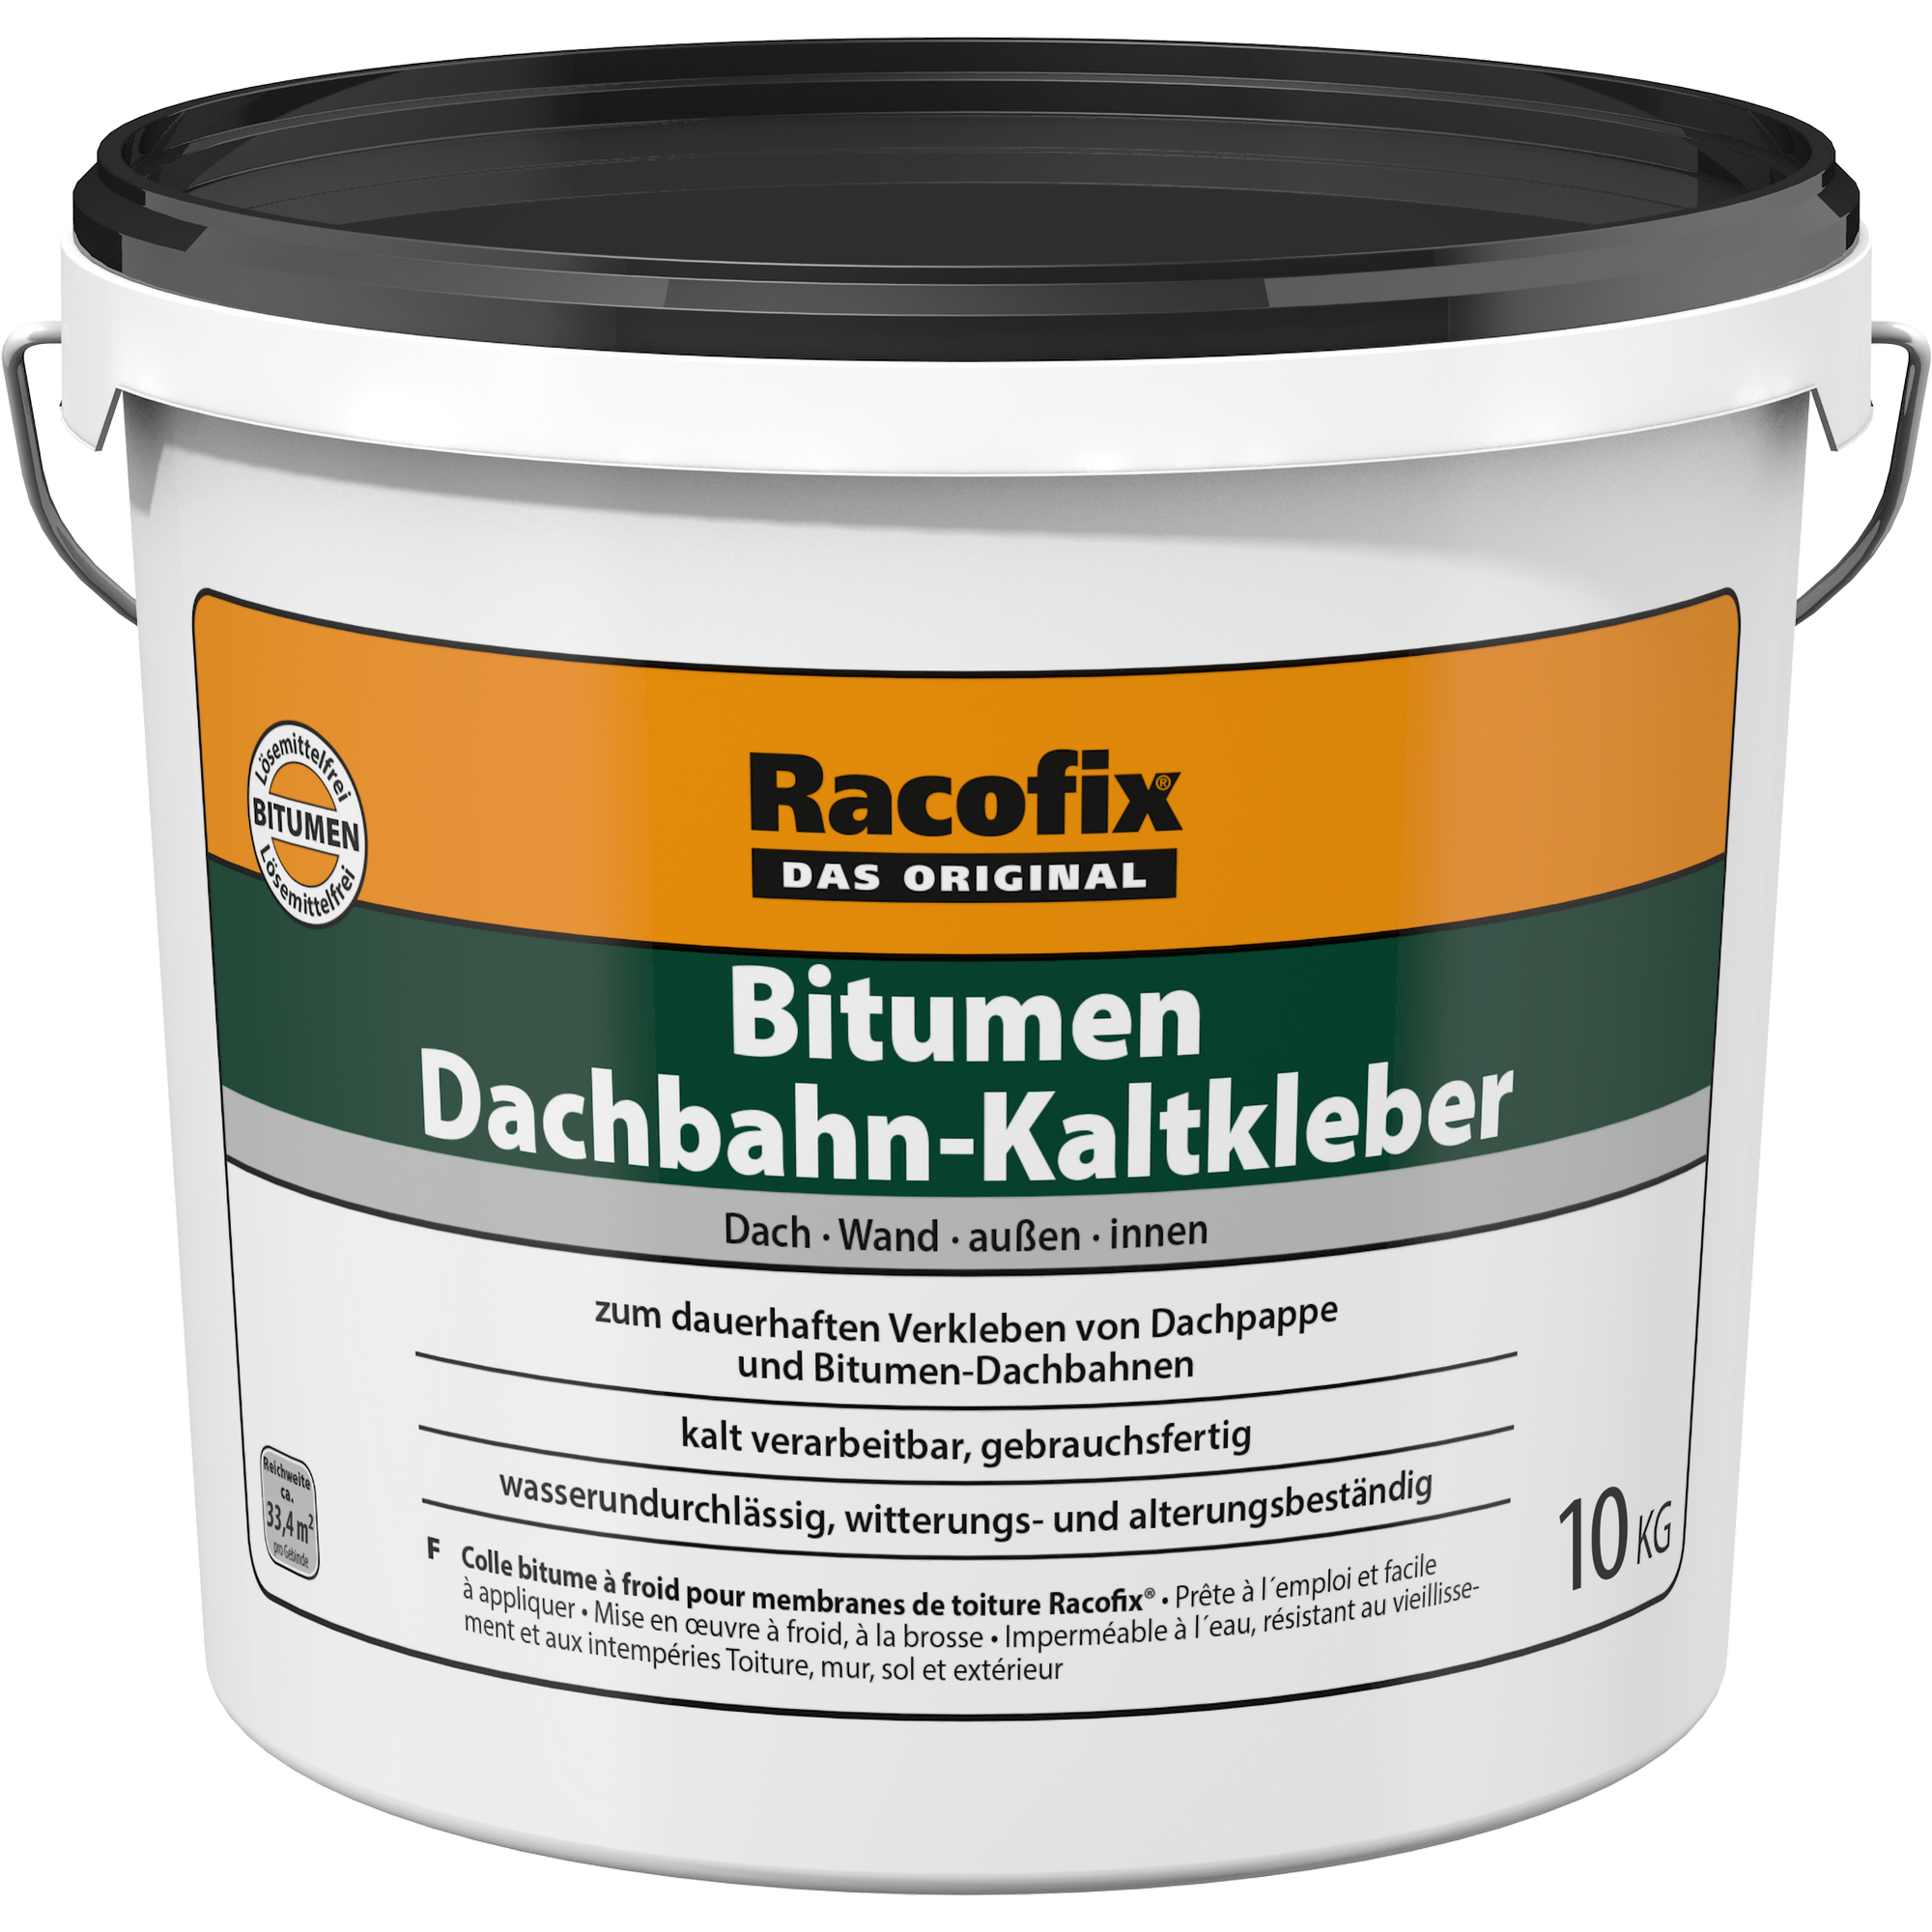 Bitumen-Kaltkleber 10 kg + product picture